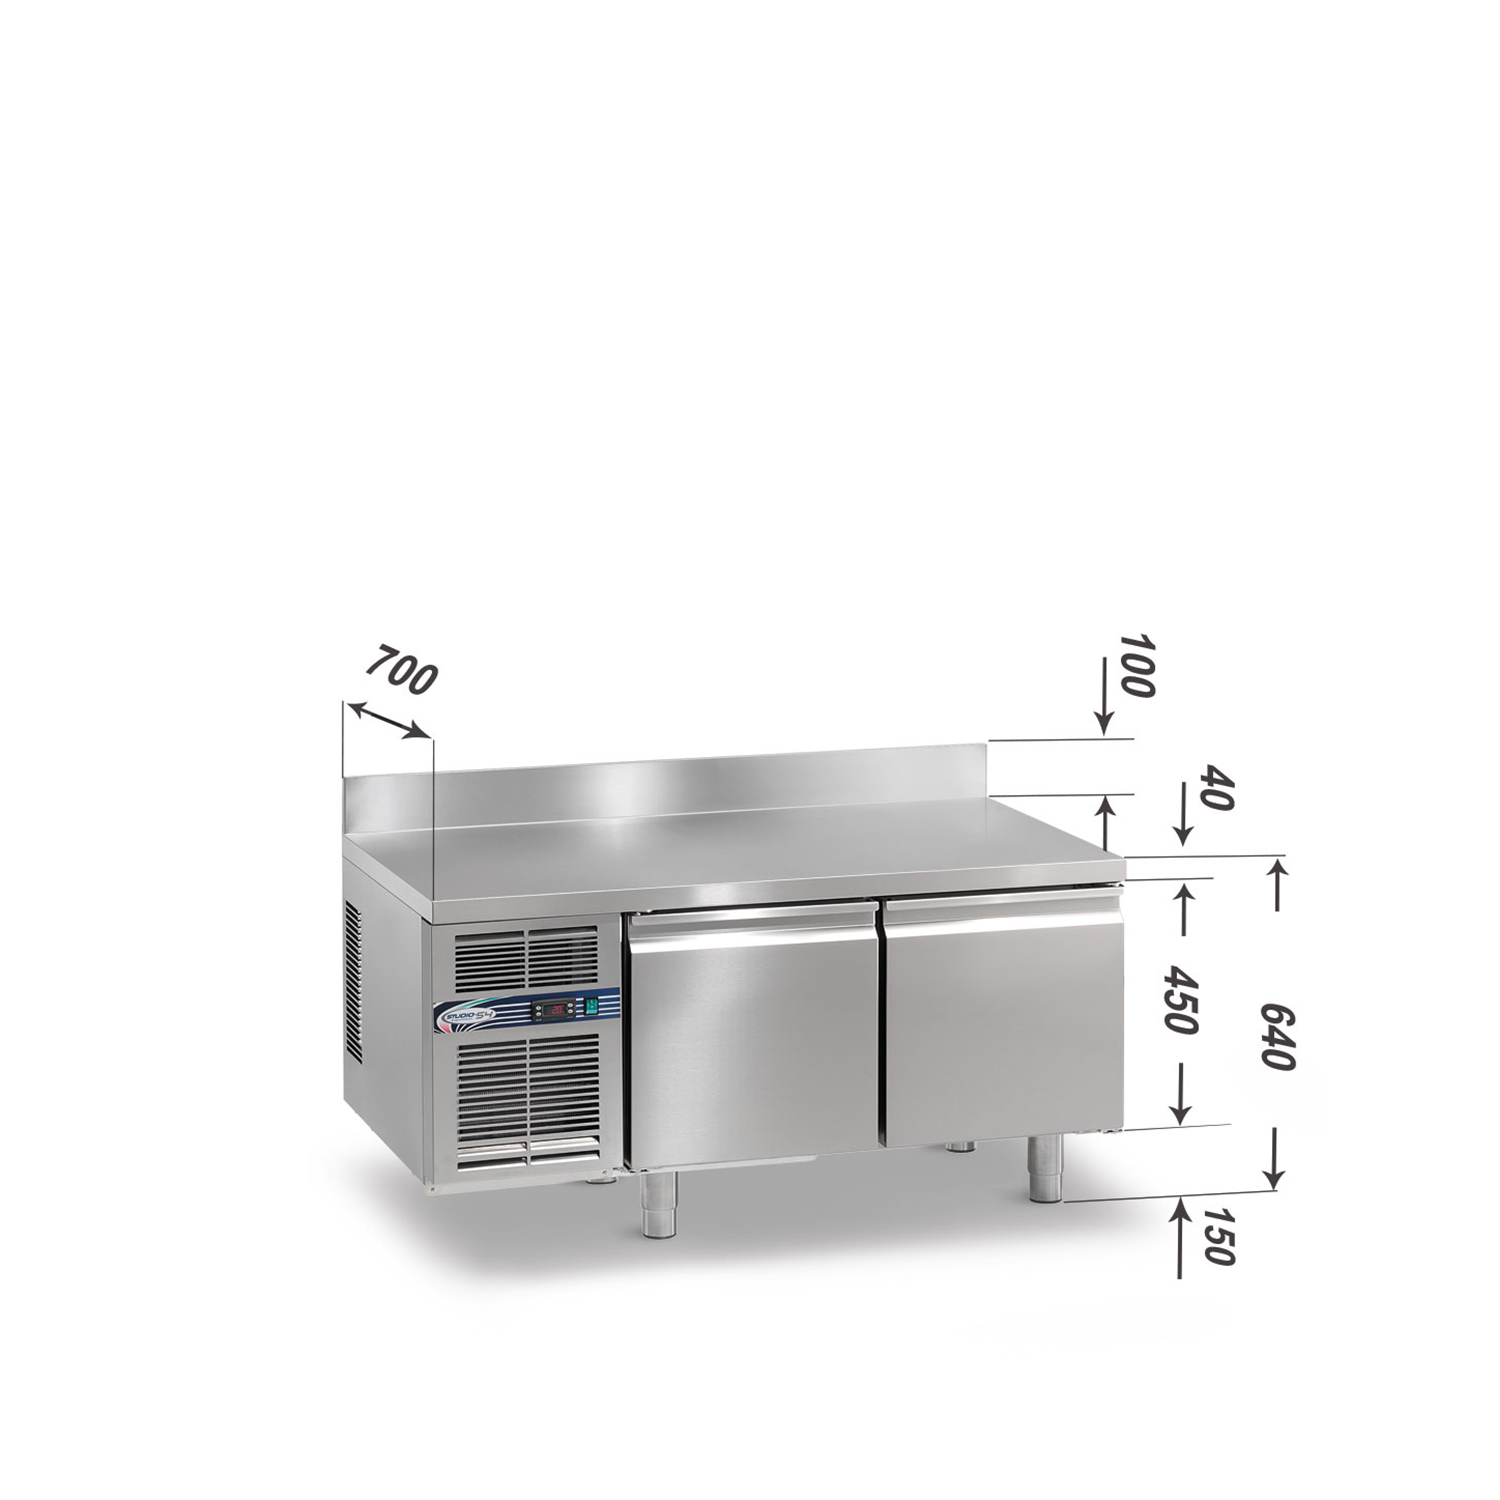 Kühltisch DAIQUIRI Top Line H450 GN 1/1, B 1280  x T 700 x H 640+100 mm, 2 Kühlfächer, Arbeitsplatte mit Aufkantung